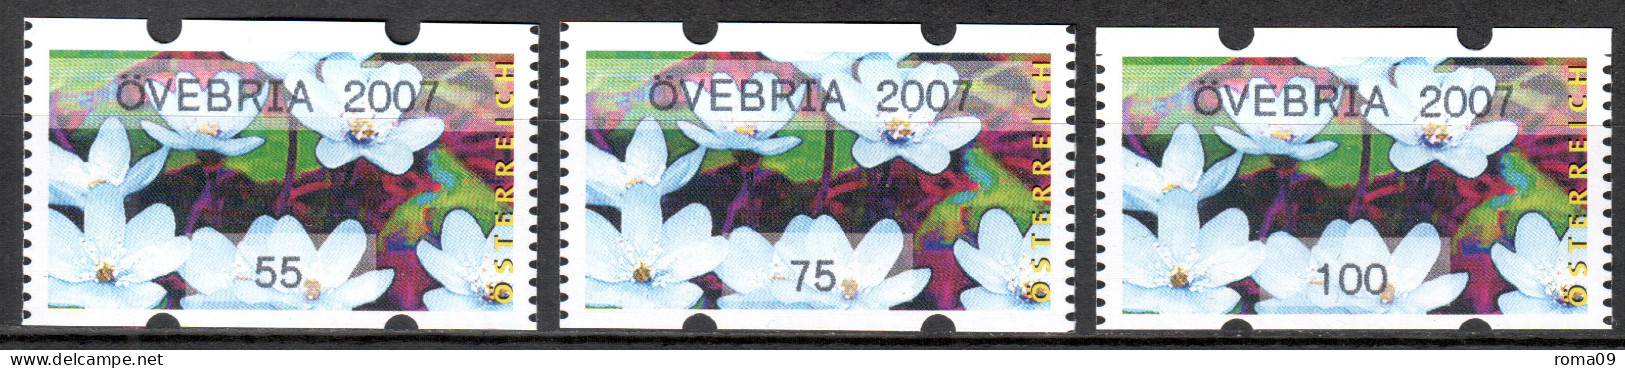 MiNr. 3x (55, 75, 100) ATM 7 G, Eindruck: „ÖVEBRIA 2007“; Postfrisch (**) - Vignette [ATM]